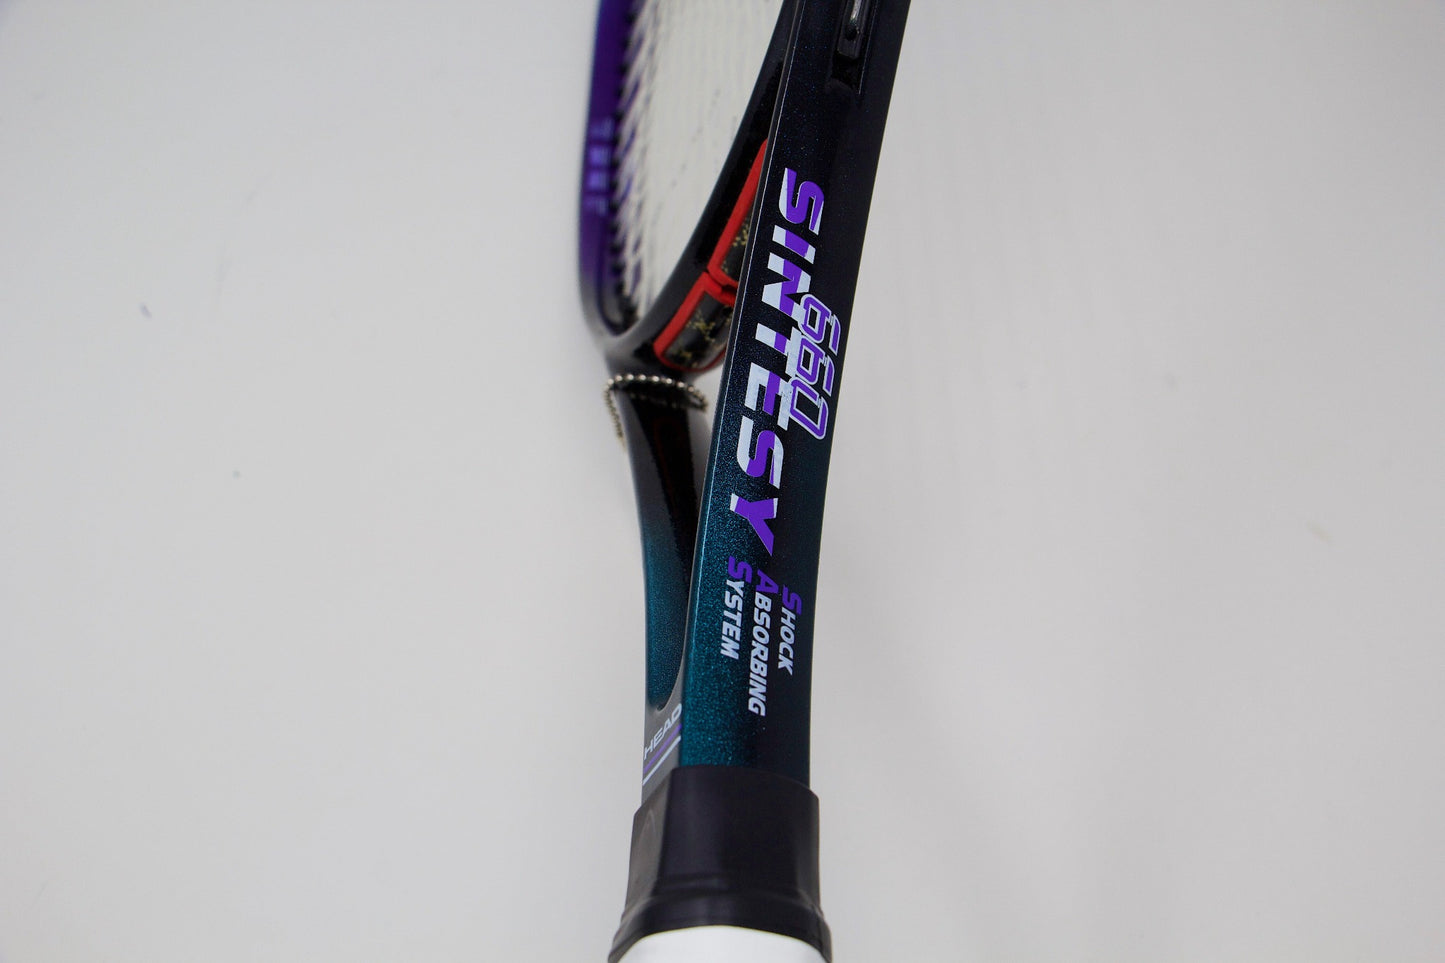 Head 660 Sintesy Refurbished Tennis Racket